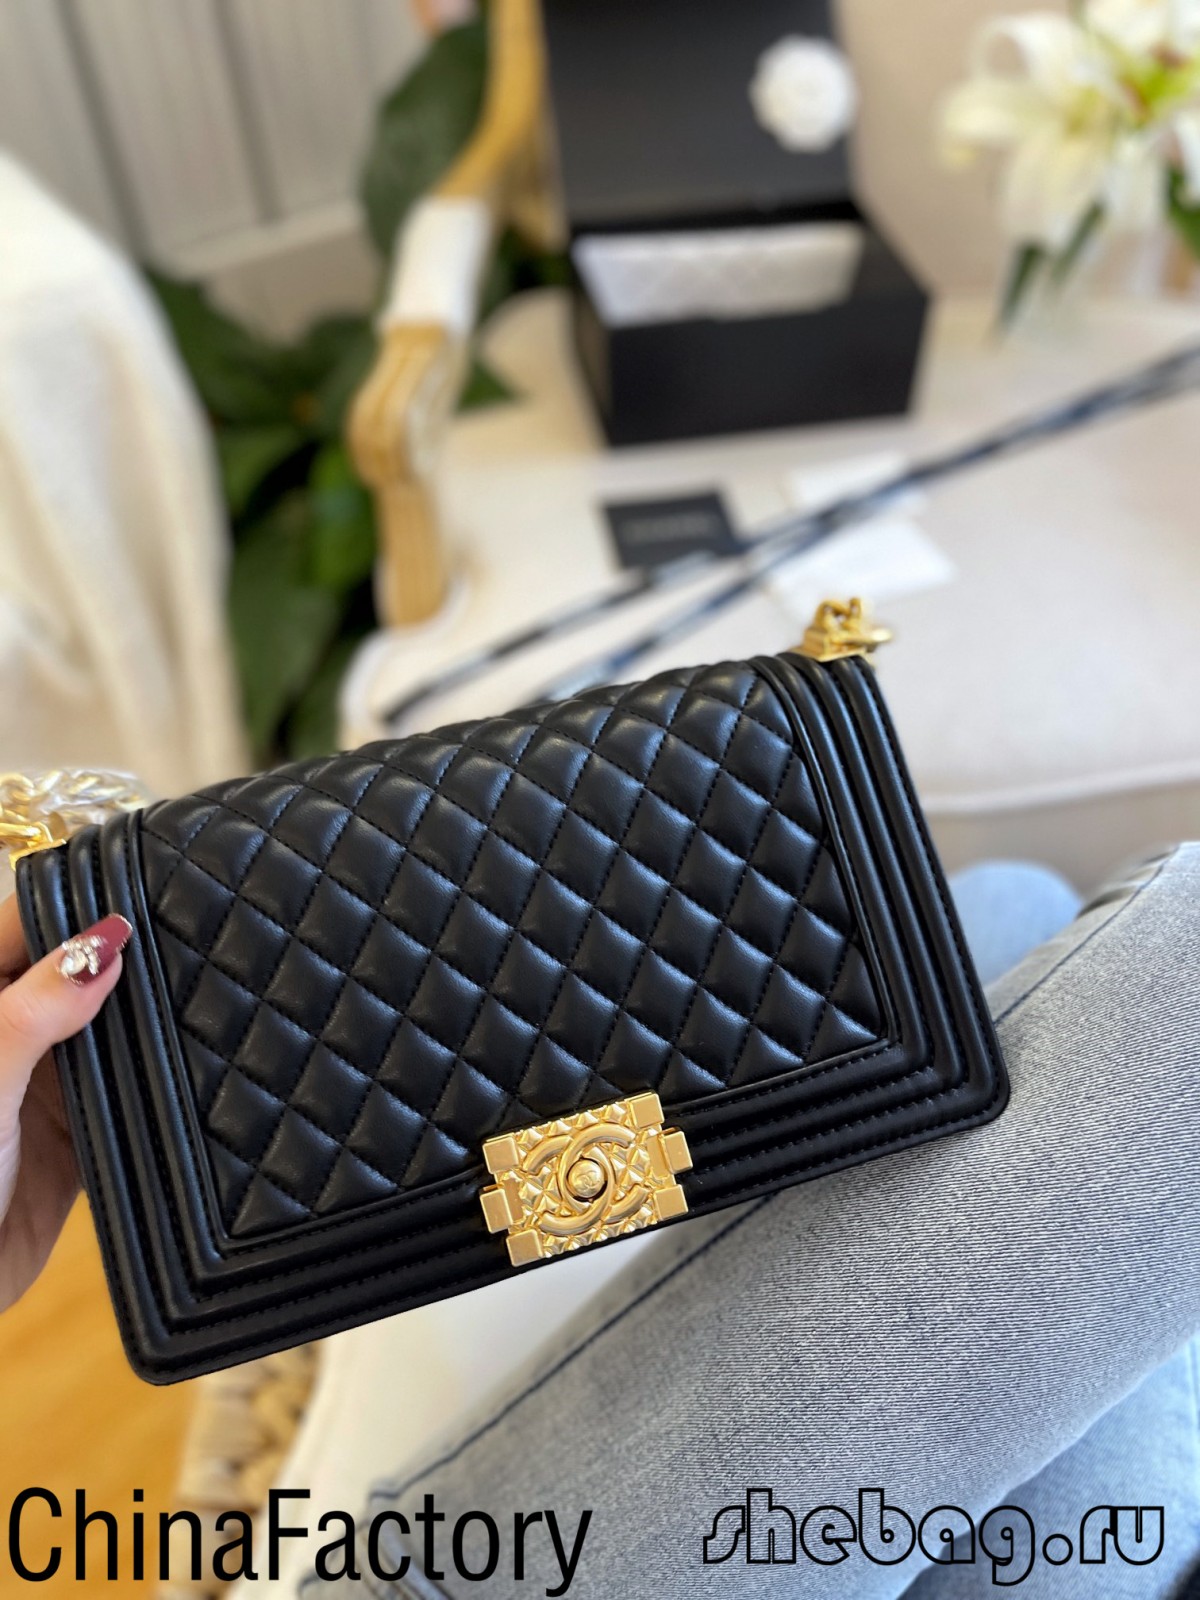 Miglior qualità 2.55 fonti di replica borsa Chanel in Cina (aggiornato nel 2022)-Migliore negozio online di borsa Louis Vuitton falsa, Replica designer bag ru